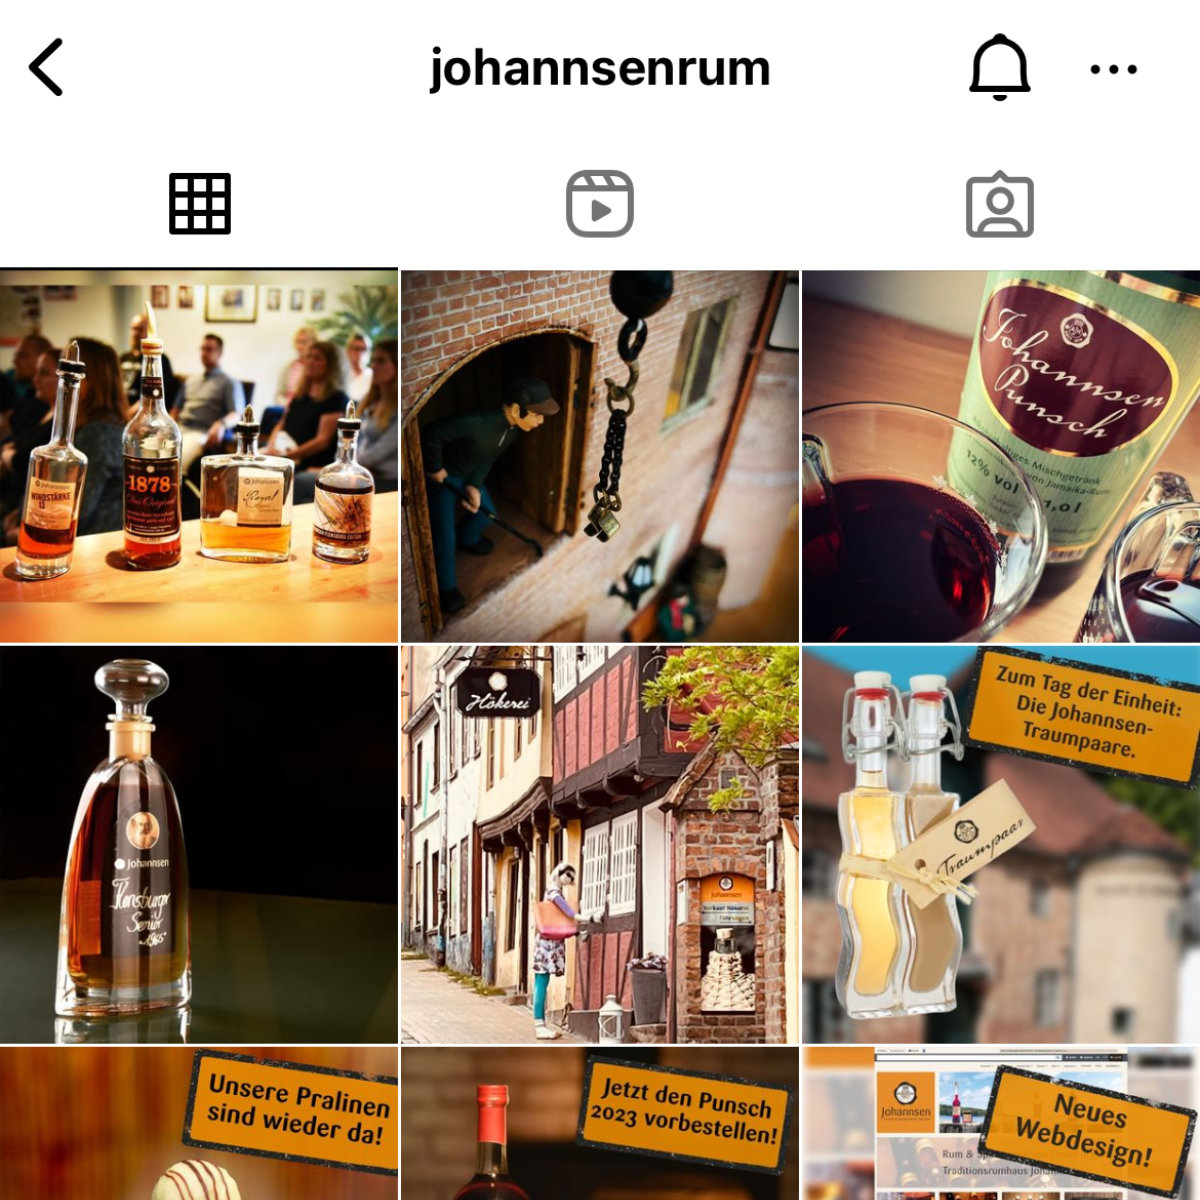 Referenz Johannsen Instagram<br />
